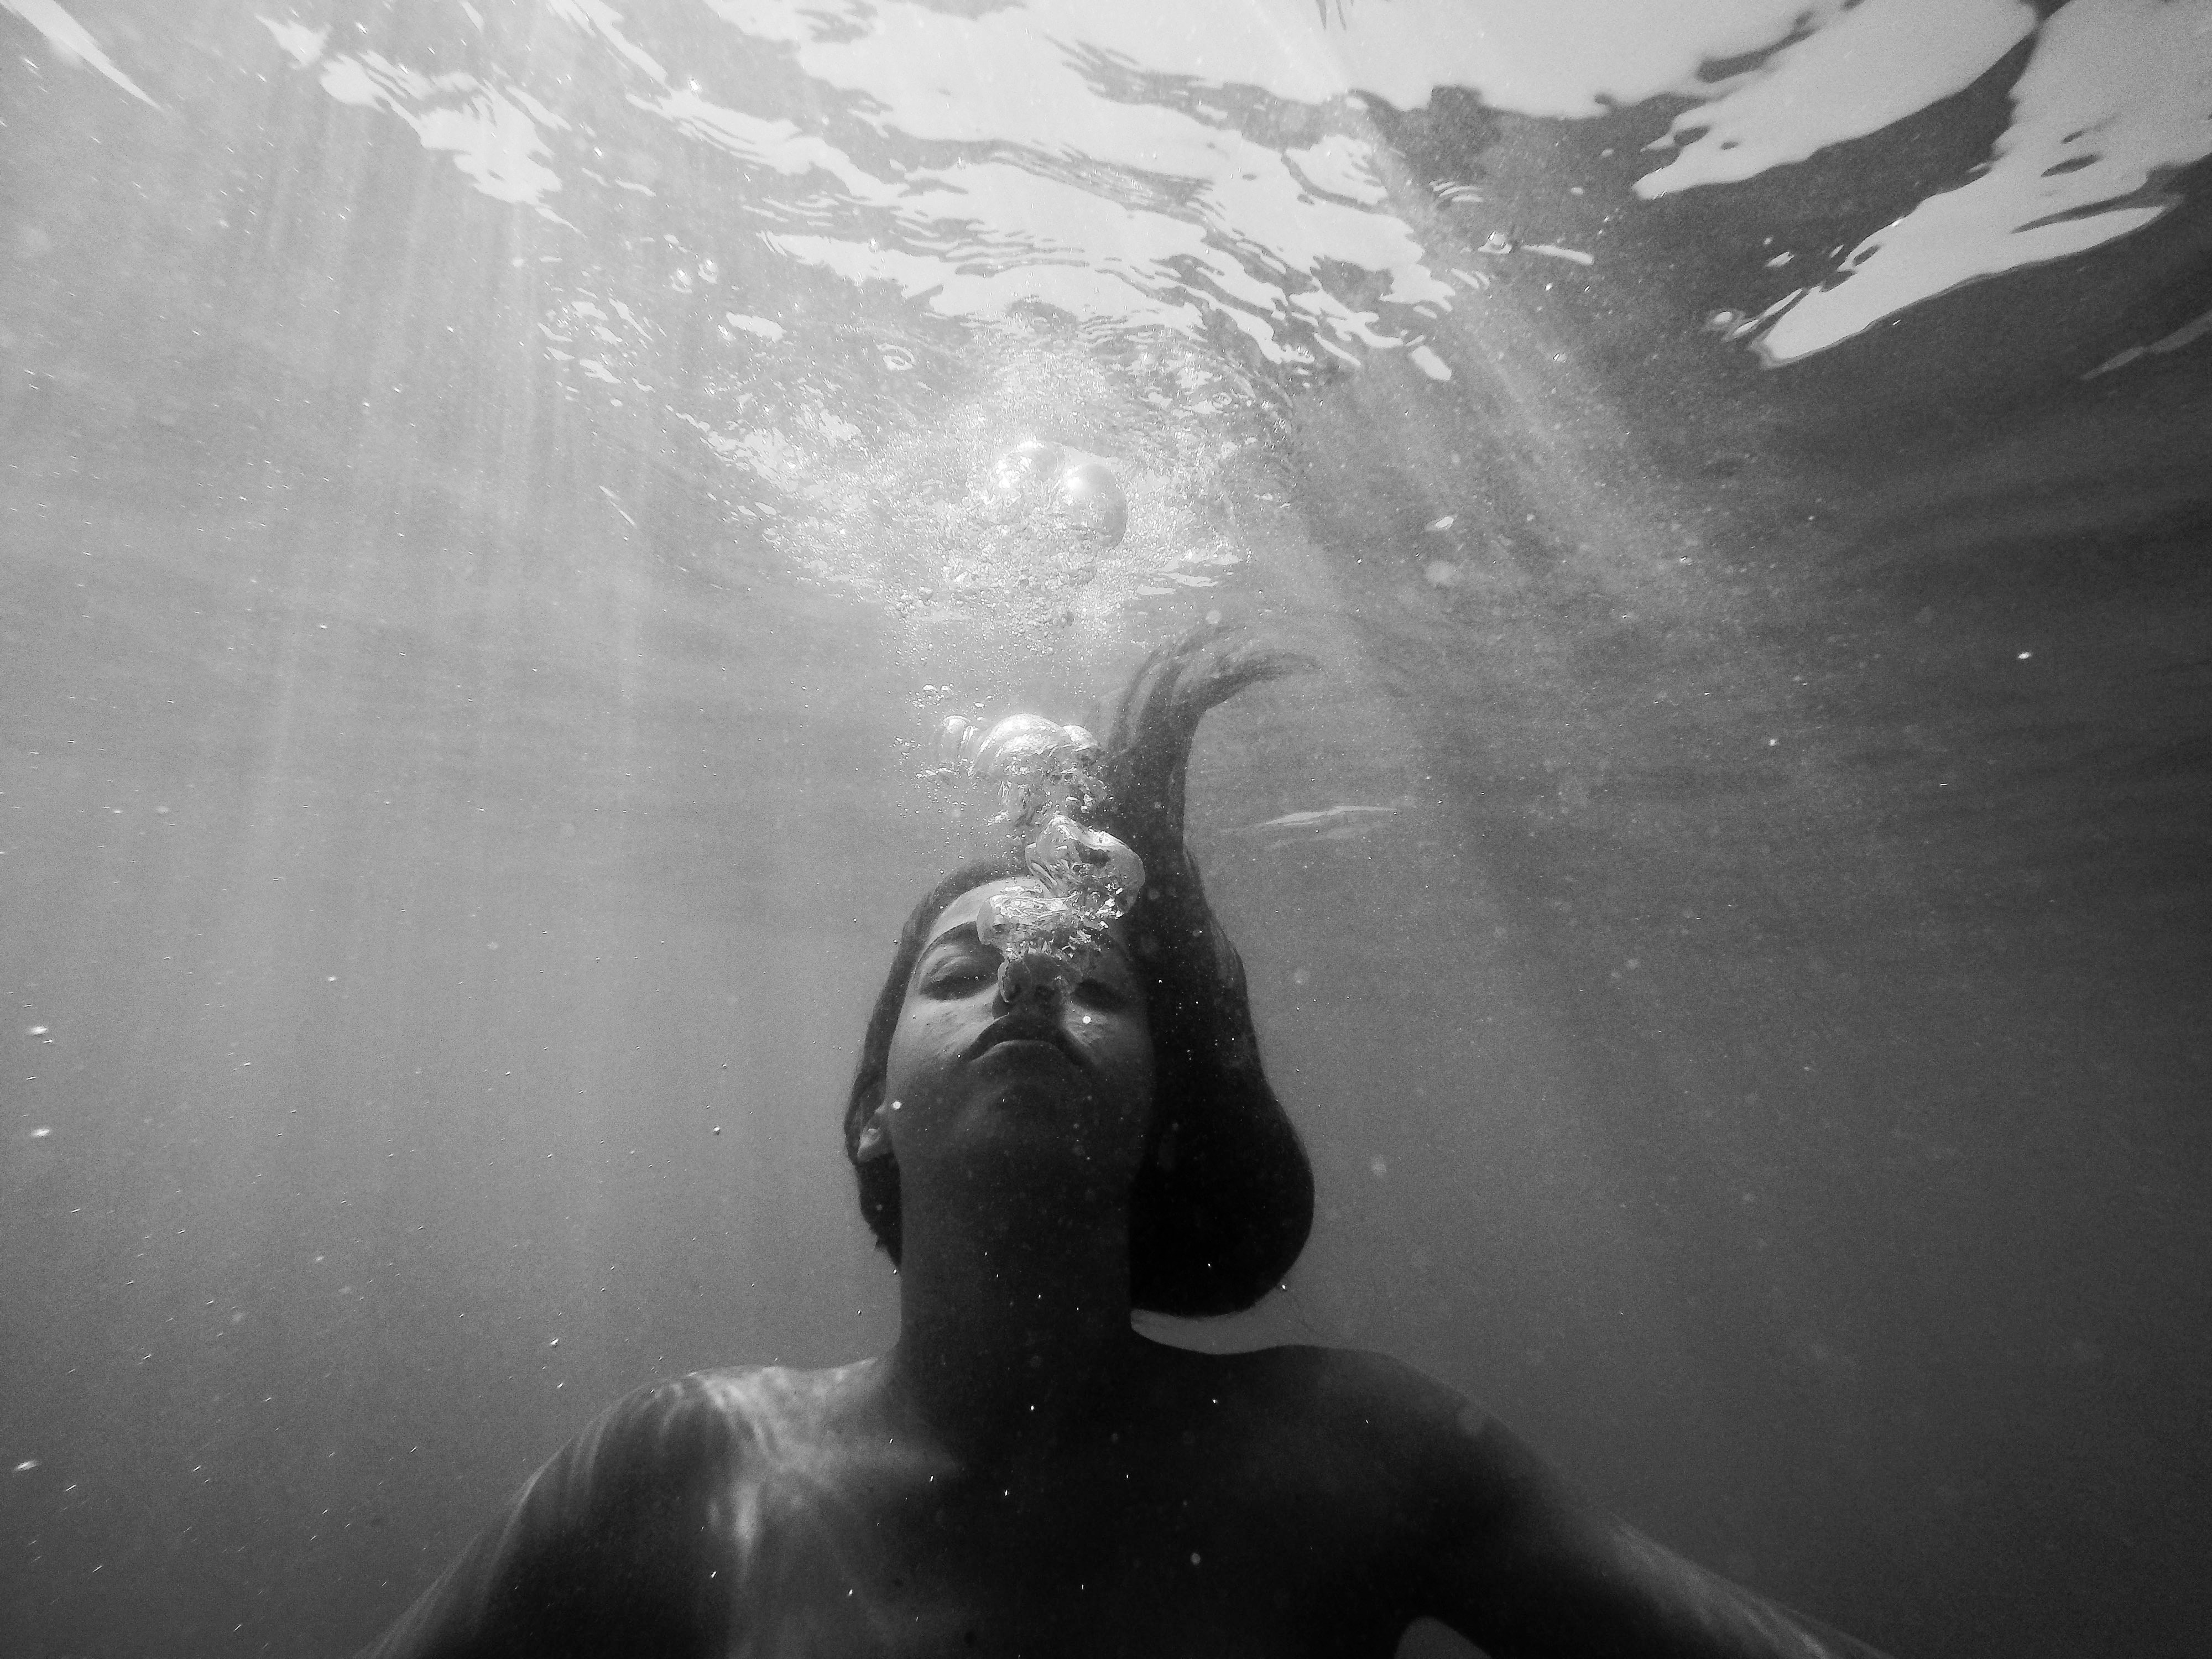 deep breath underwater image of